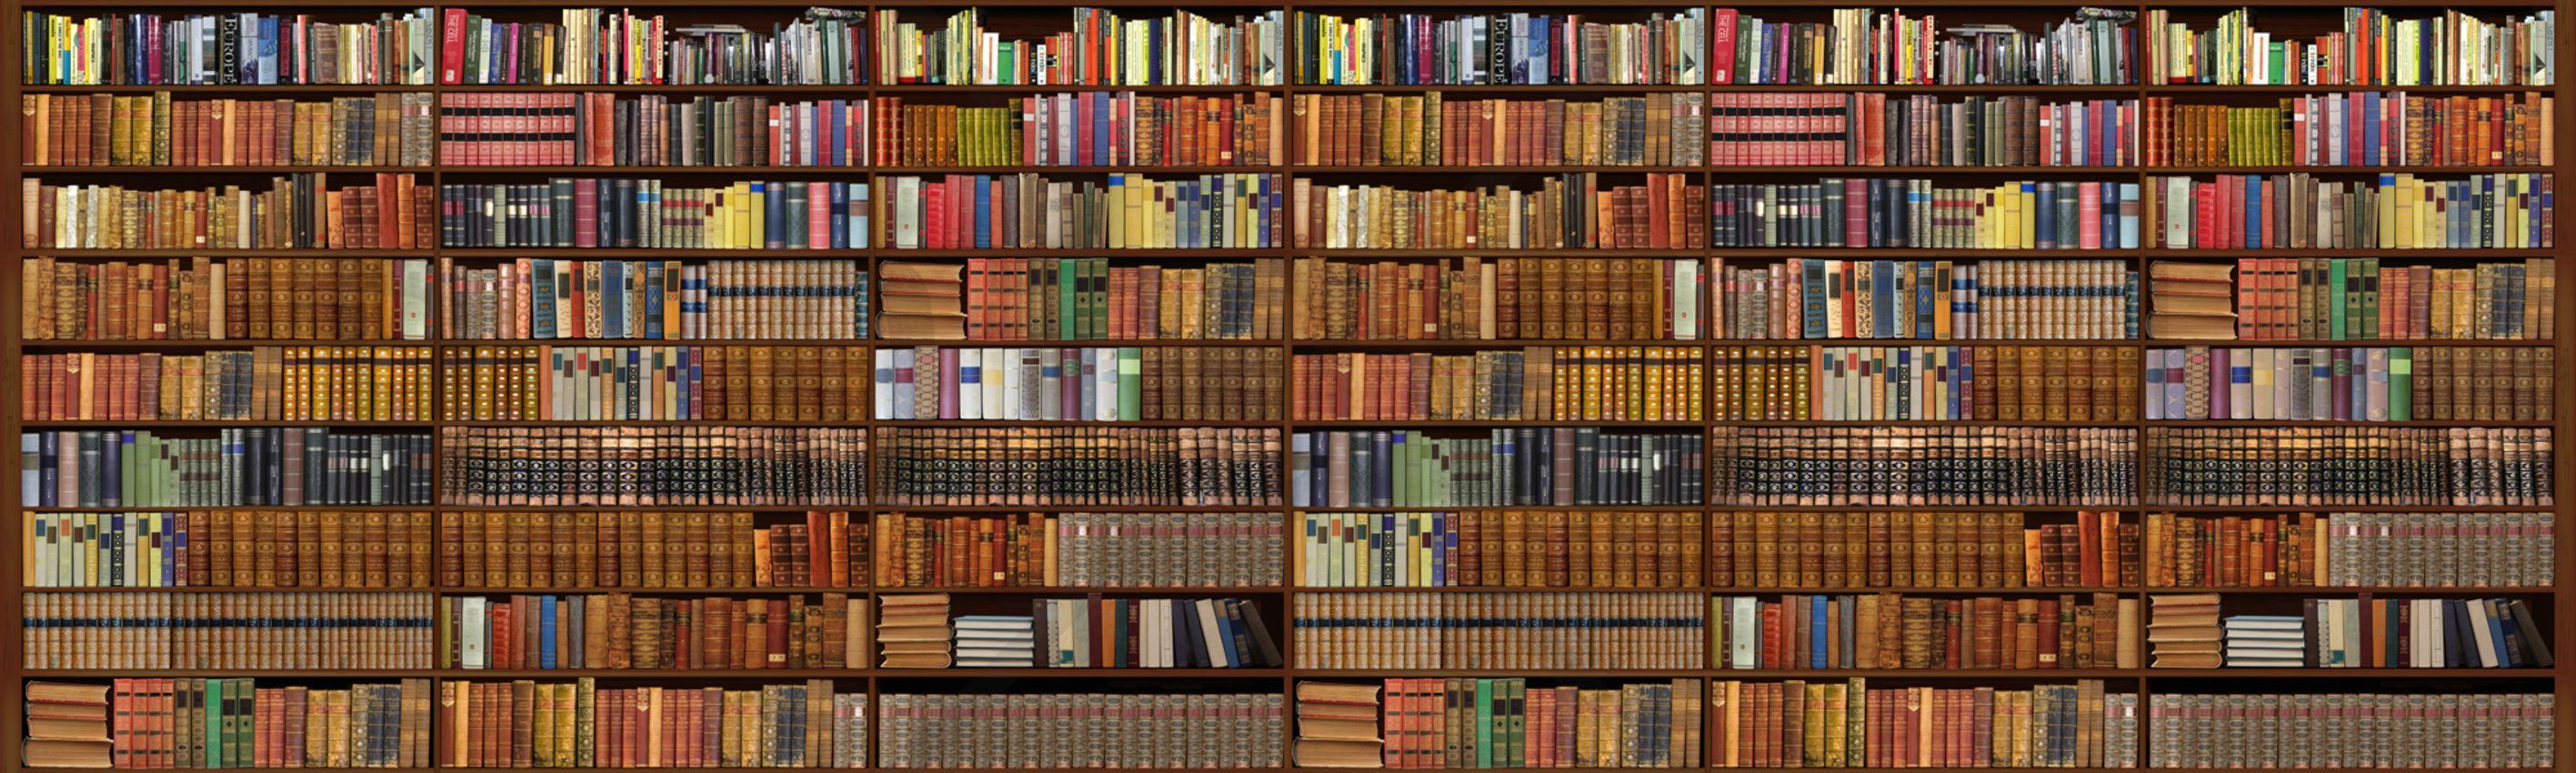 2833 x 850 · jpeg - Bookshelf Wallpapers - Wallpaper Cave